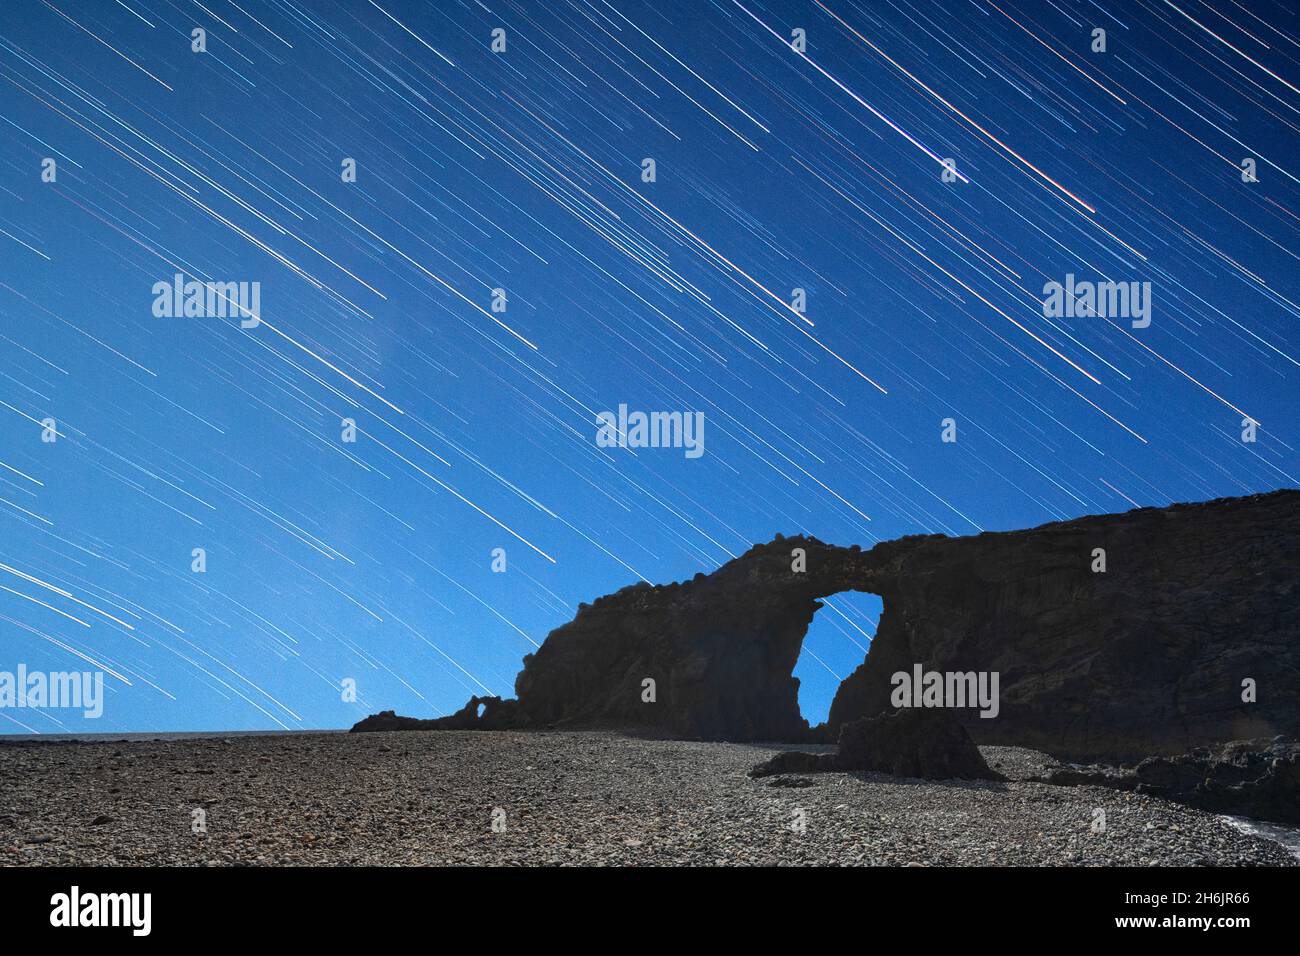 Piste de randonnée sur l'arche de pierre naturelle Arco del Jurado à la plage de Pena Horadada, Fuerteventura, îles Canaries, Espagne, Atlantique,Europe Banque D'Images